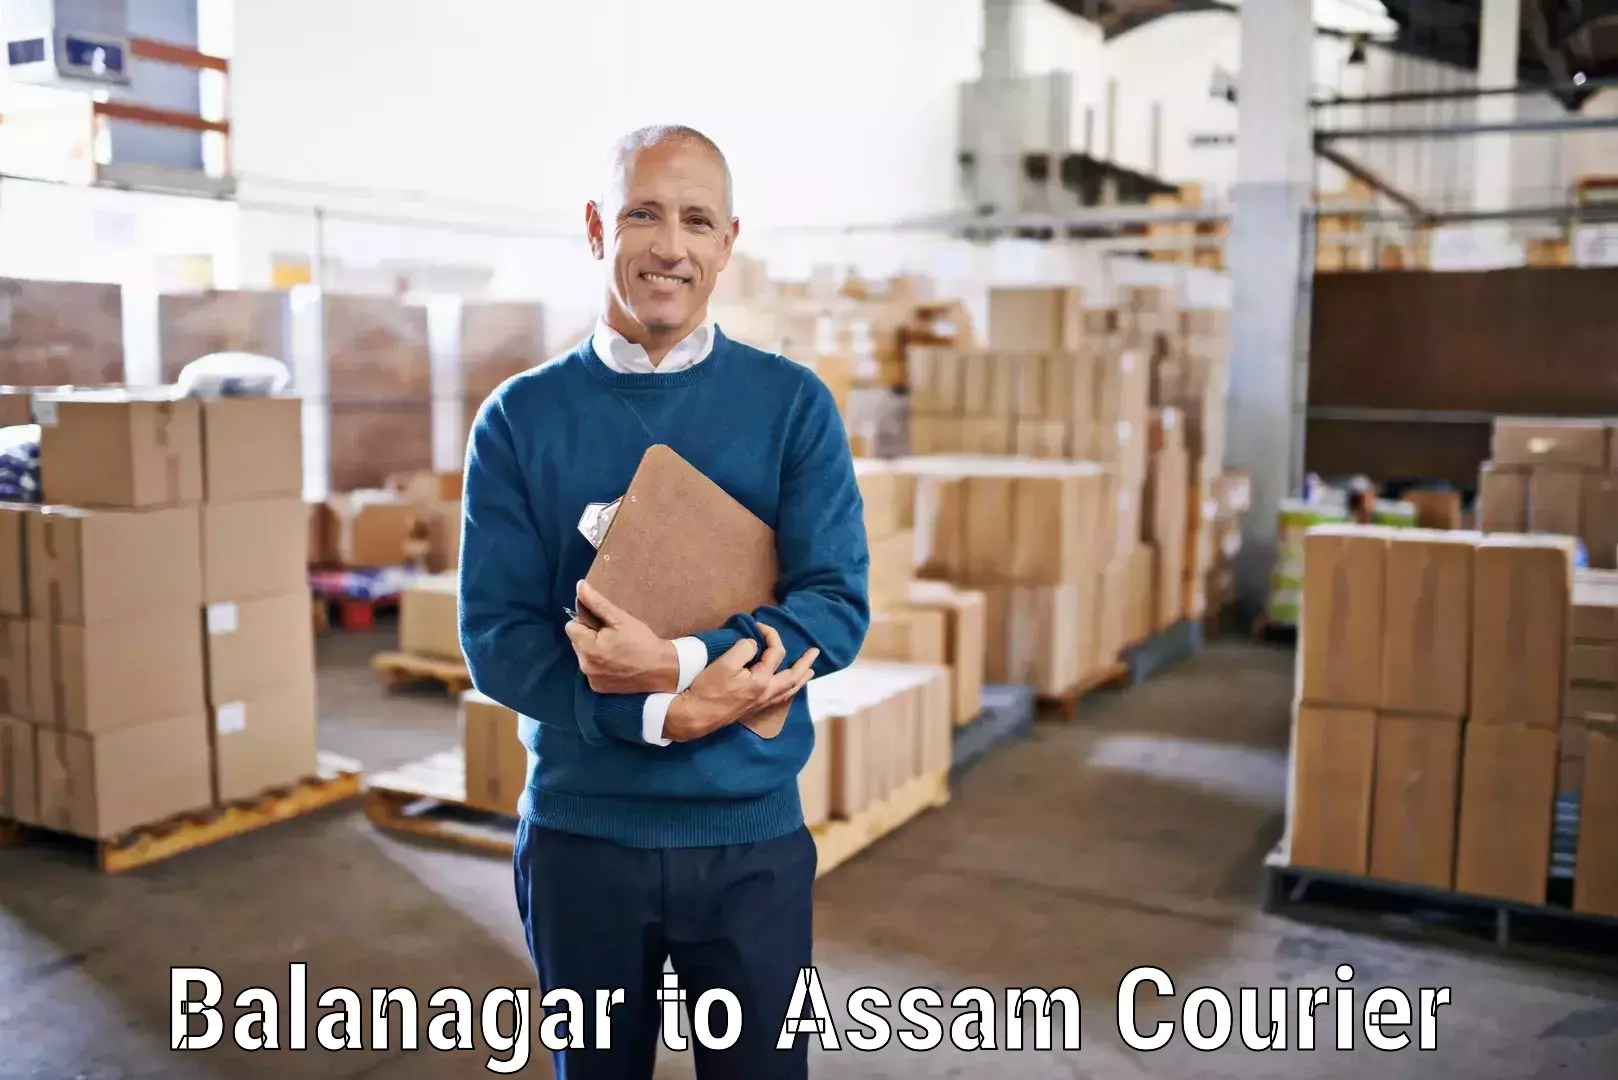 Modern courier technology Balanagar to Kabuganj